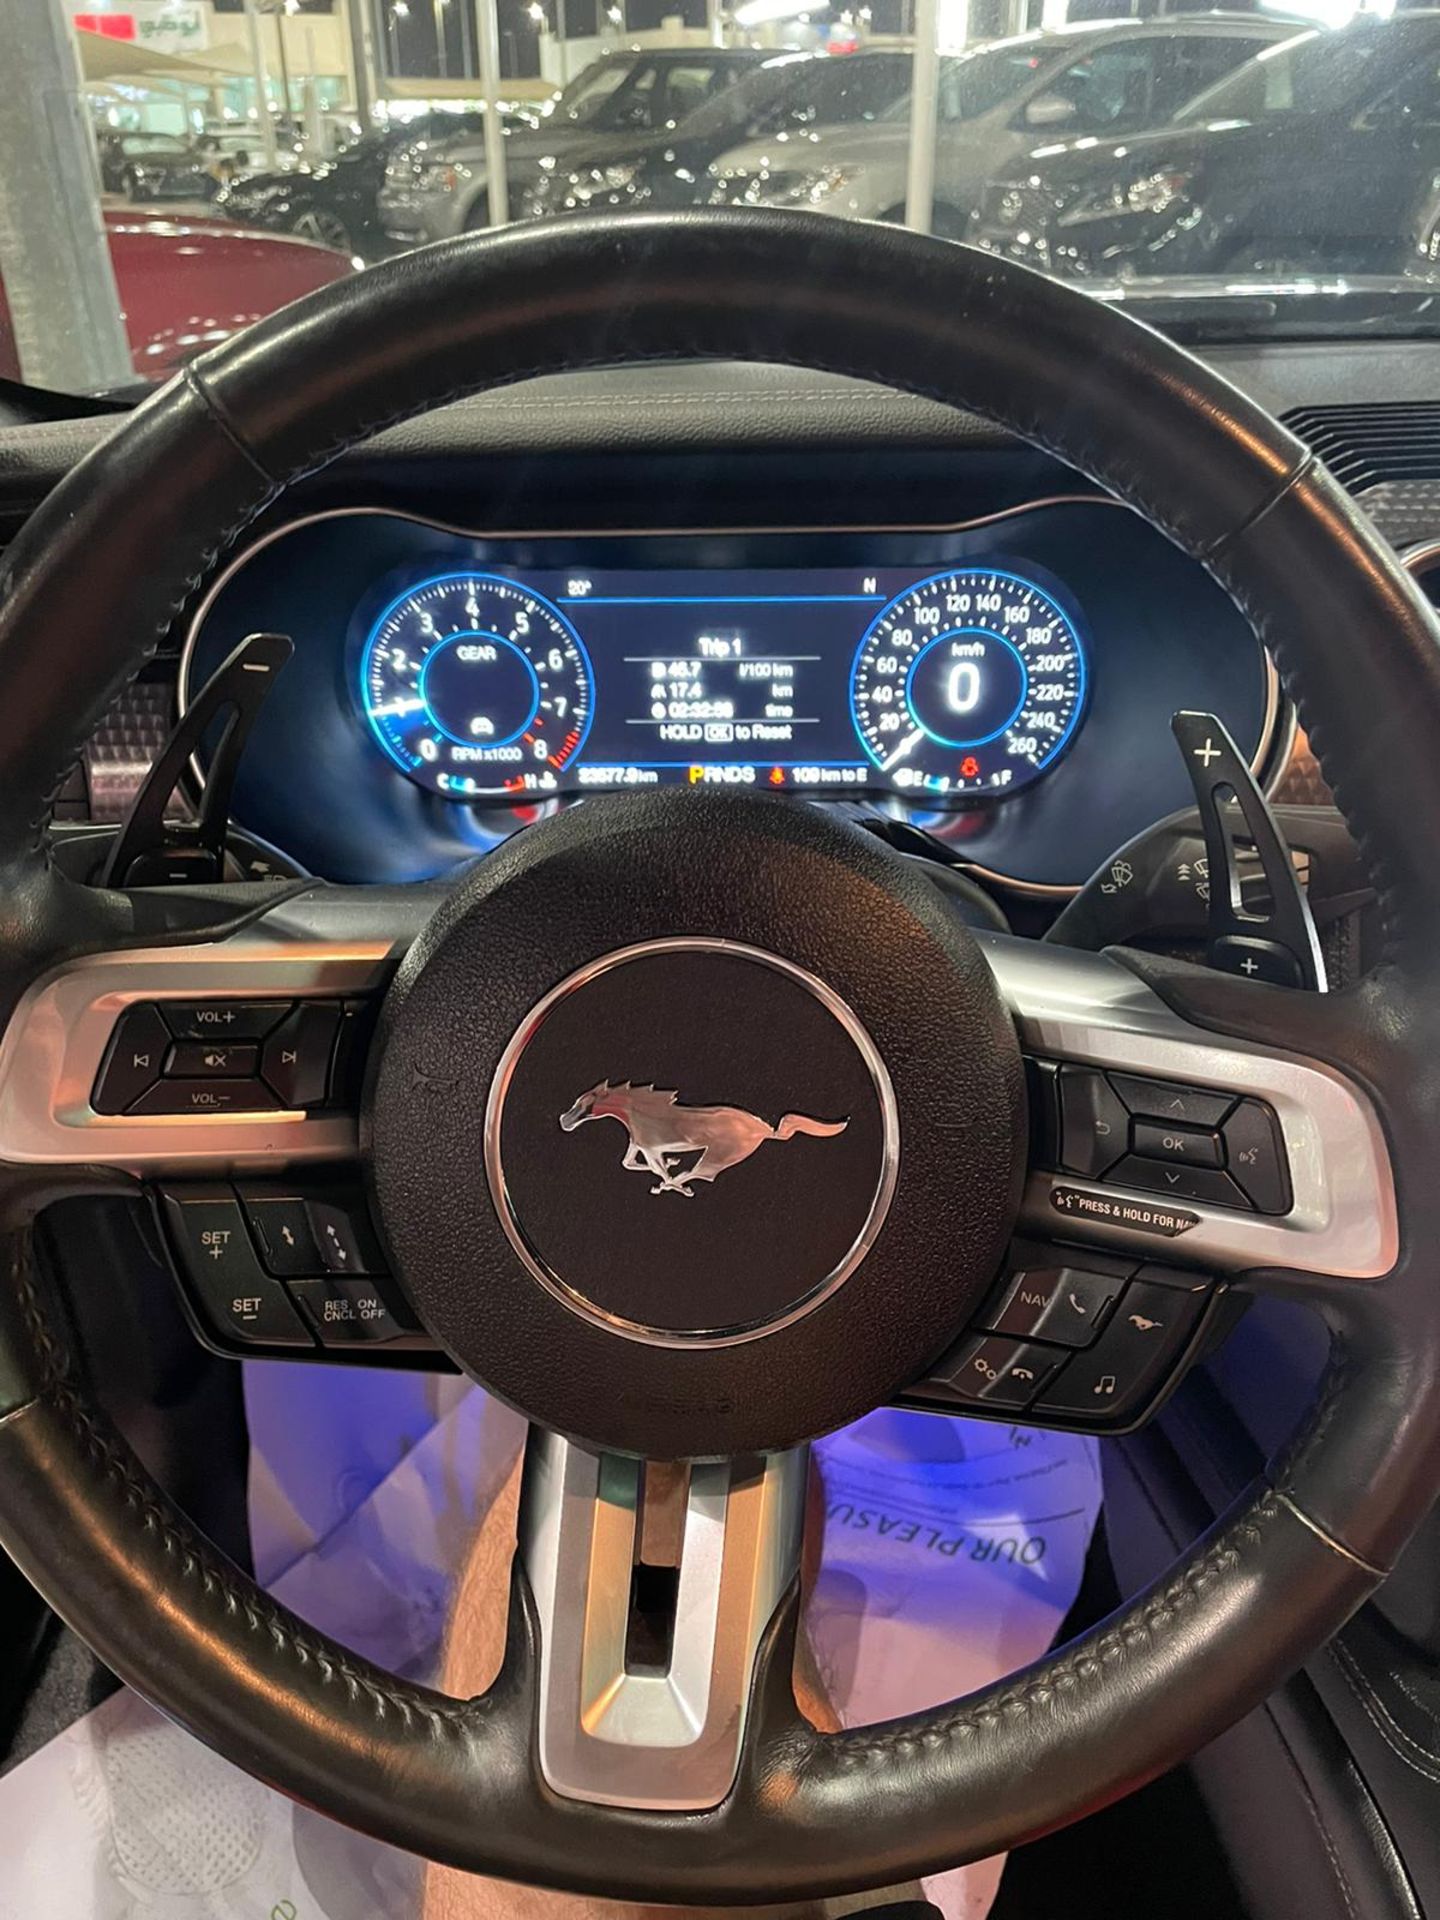 2019 mustang gt 5.0 V8 Shelby body kit 15,000 km. Uk mid APRIL With nova *PLUS VAT* - Image 5 of 9